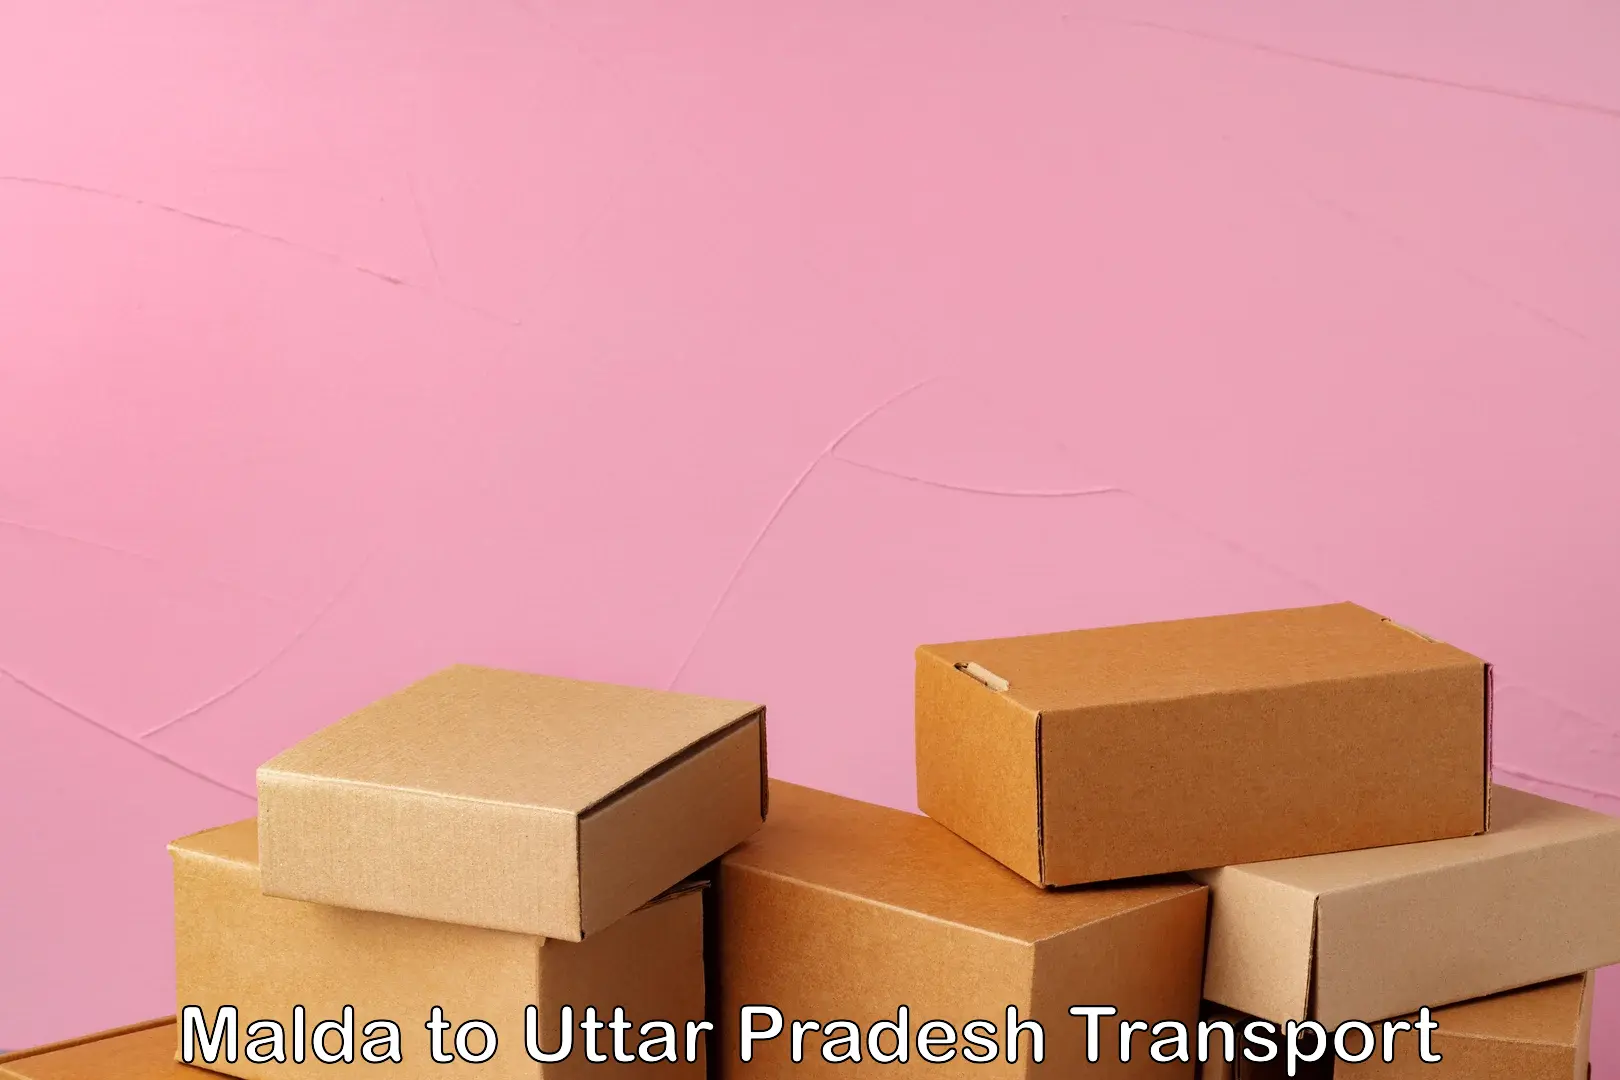 Parcel transport services Malda to Uttar Pradesh